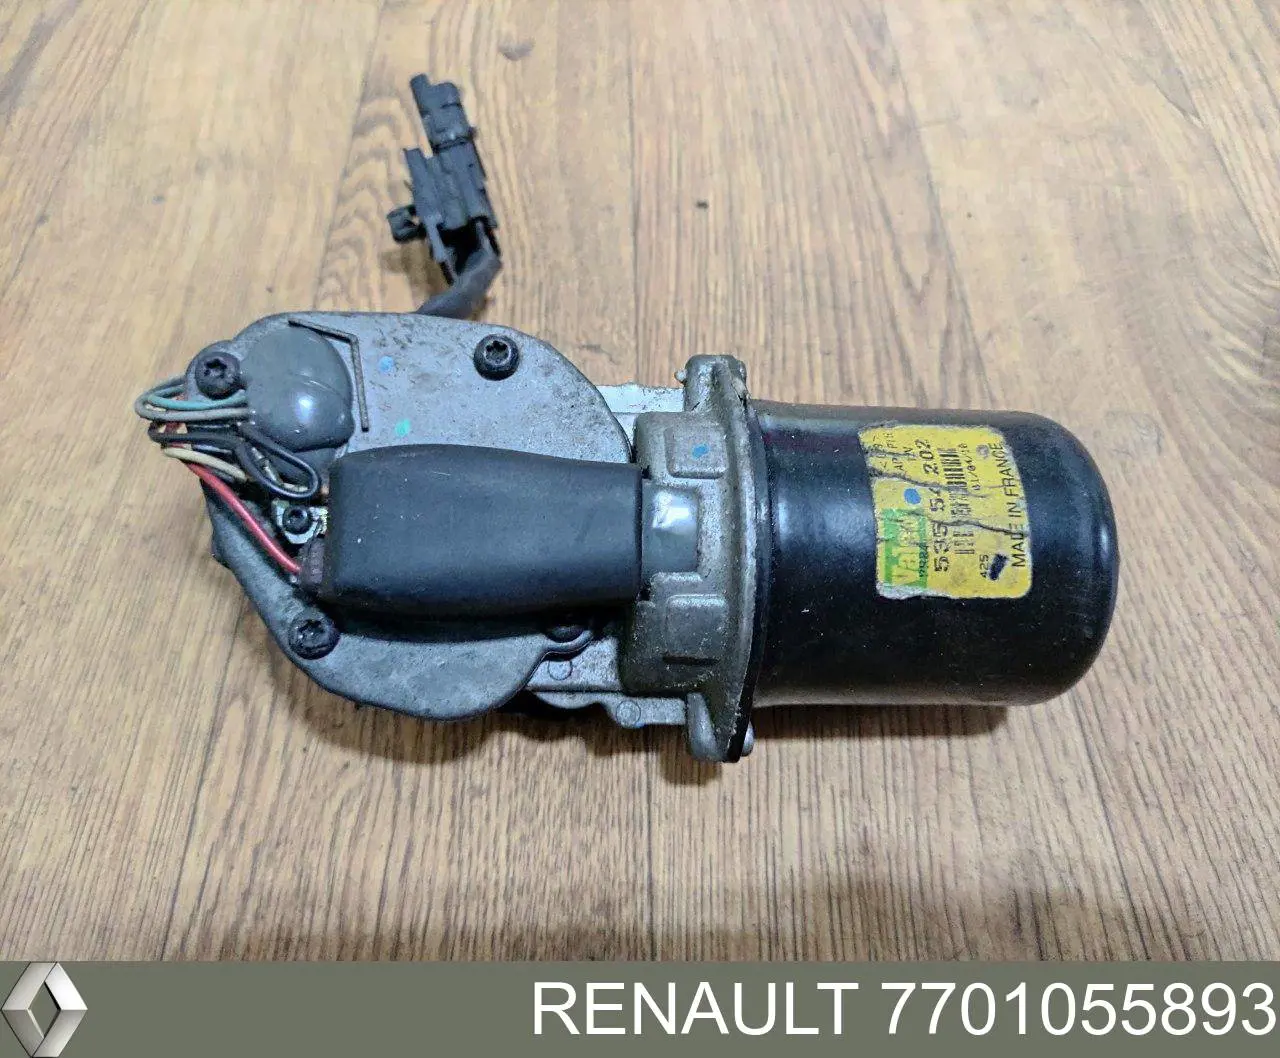 7701055893 Renault (RVI) motor de limpador pára-brisas do pára-brisas